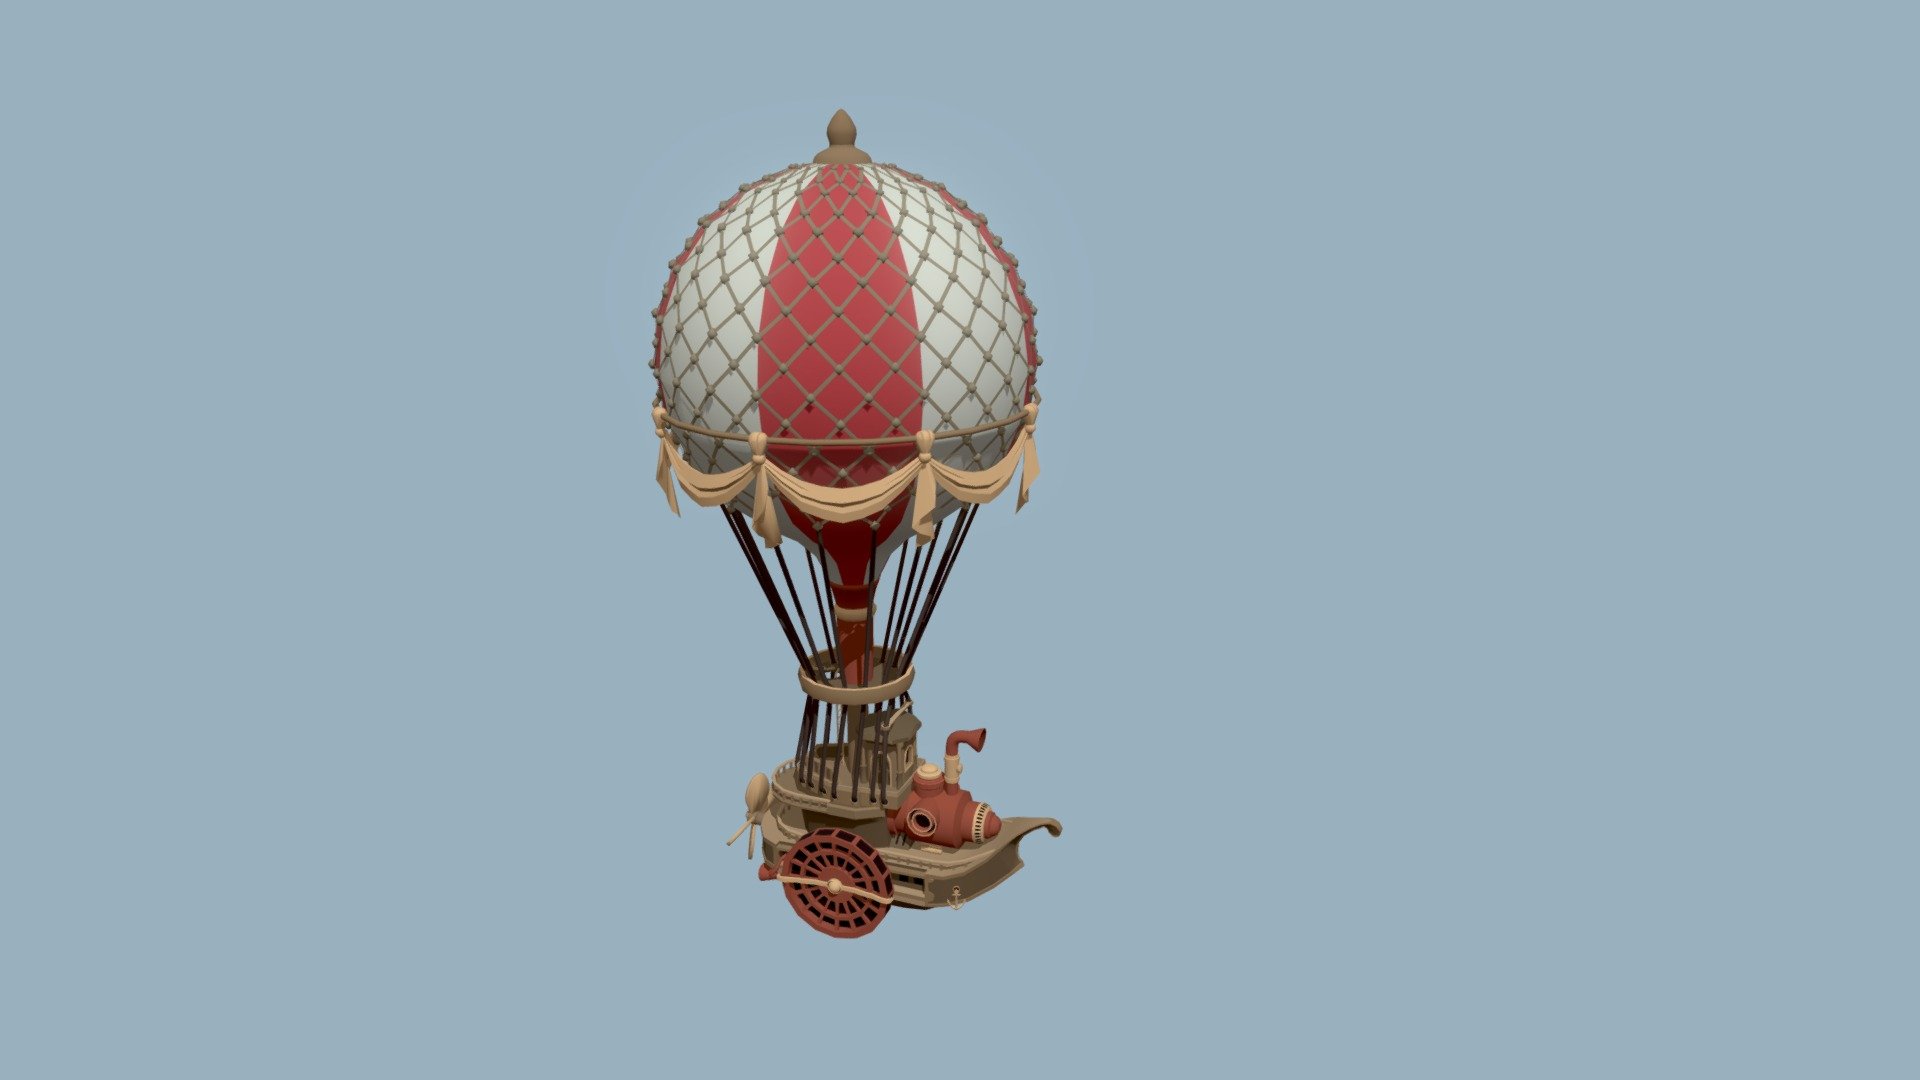 Verzamelen galop Trillen HW 06 - detailing (1 of 3) - Hot Air Balloon - Download Free 3D model by  JarviTiralin (@JarviTiralin) [61d7c16]